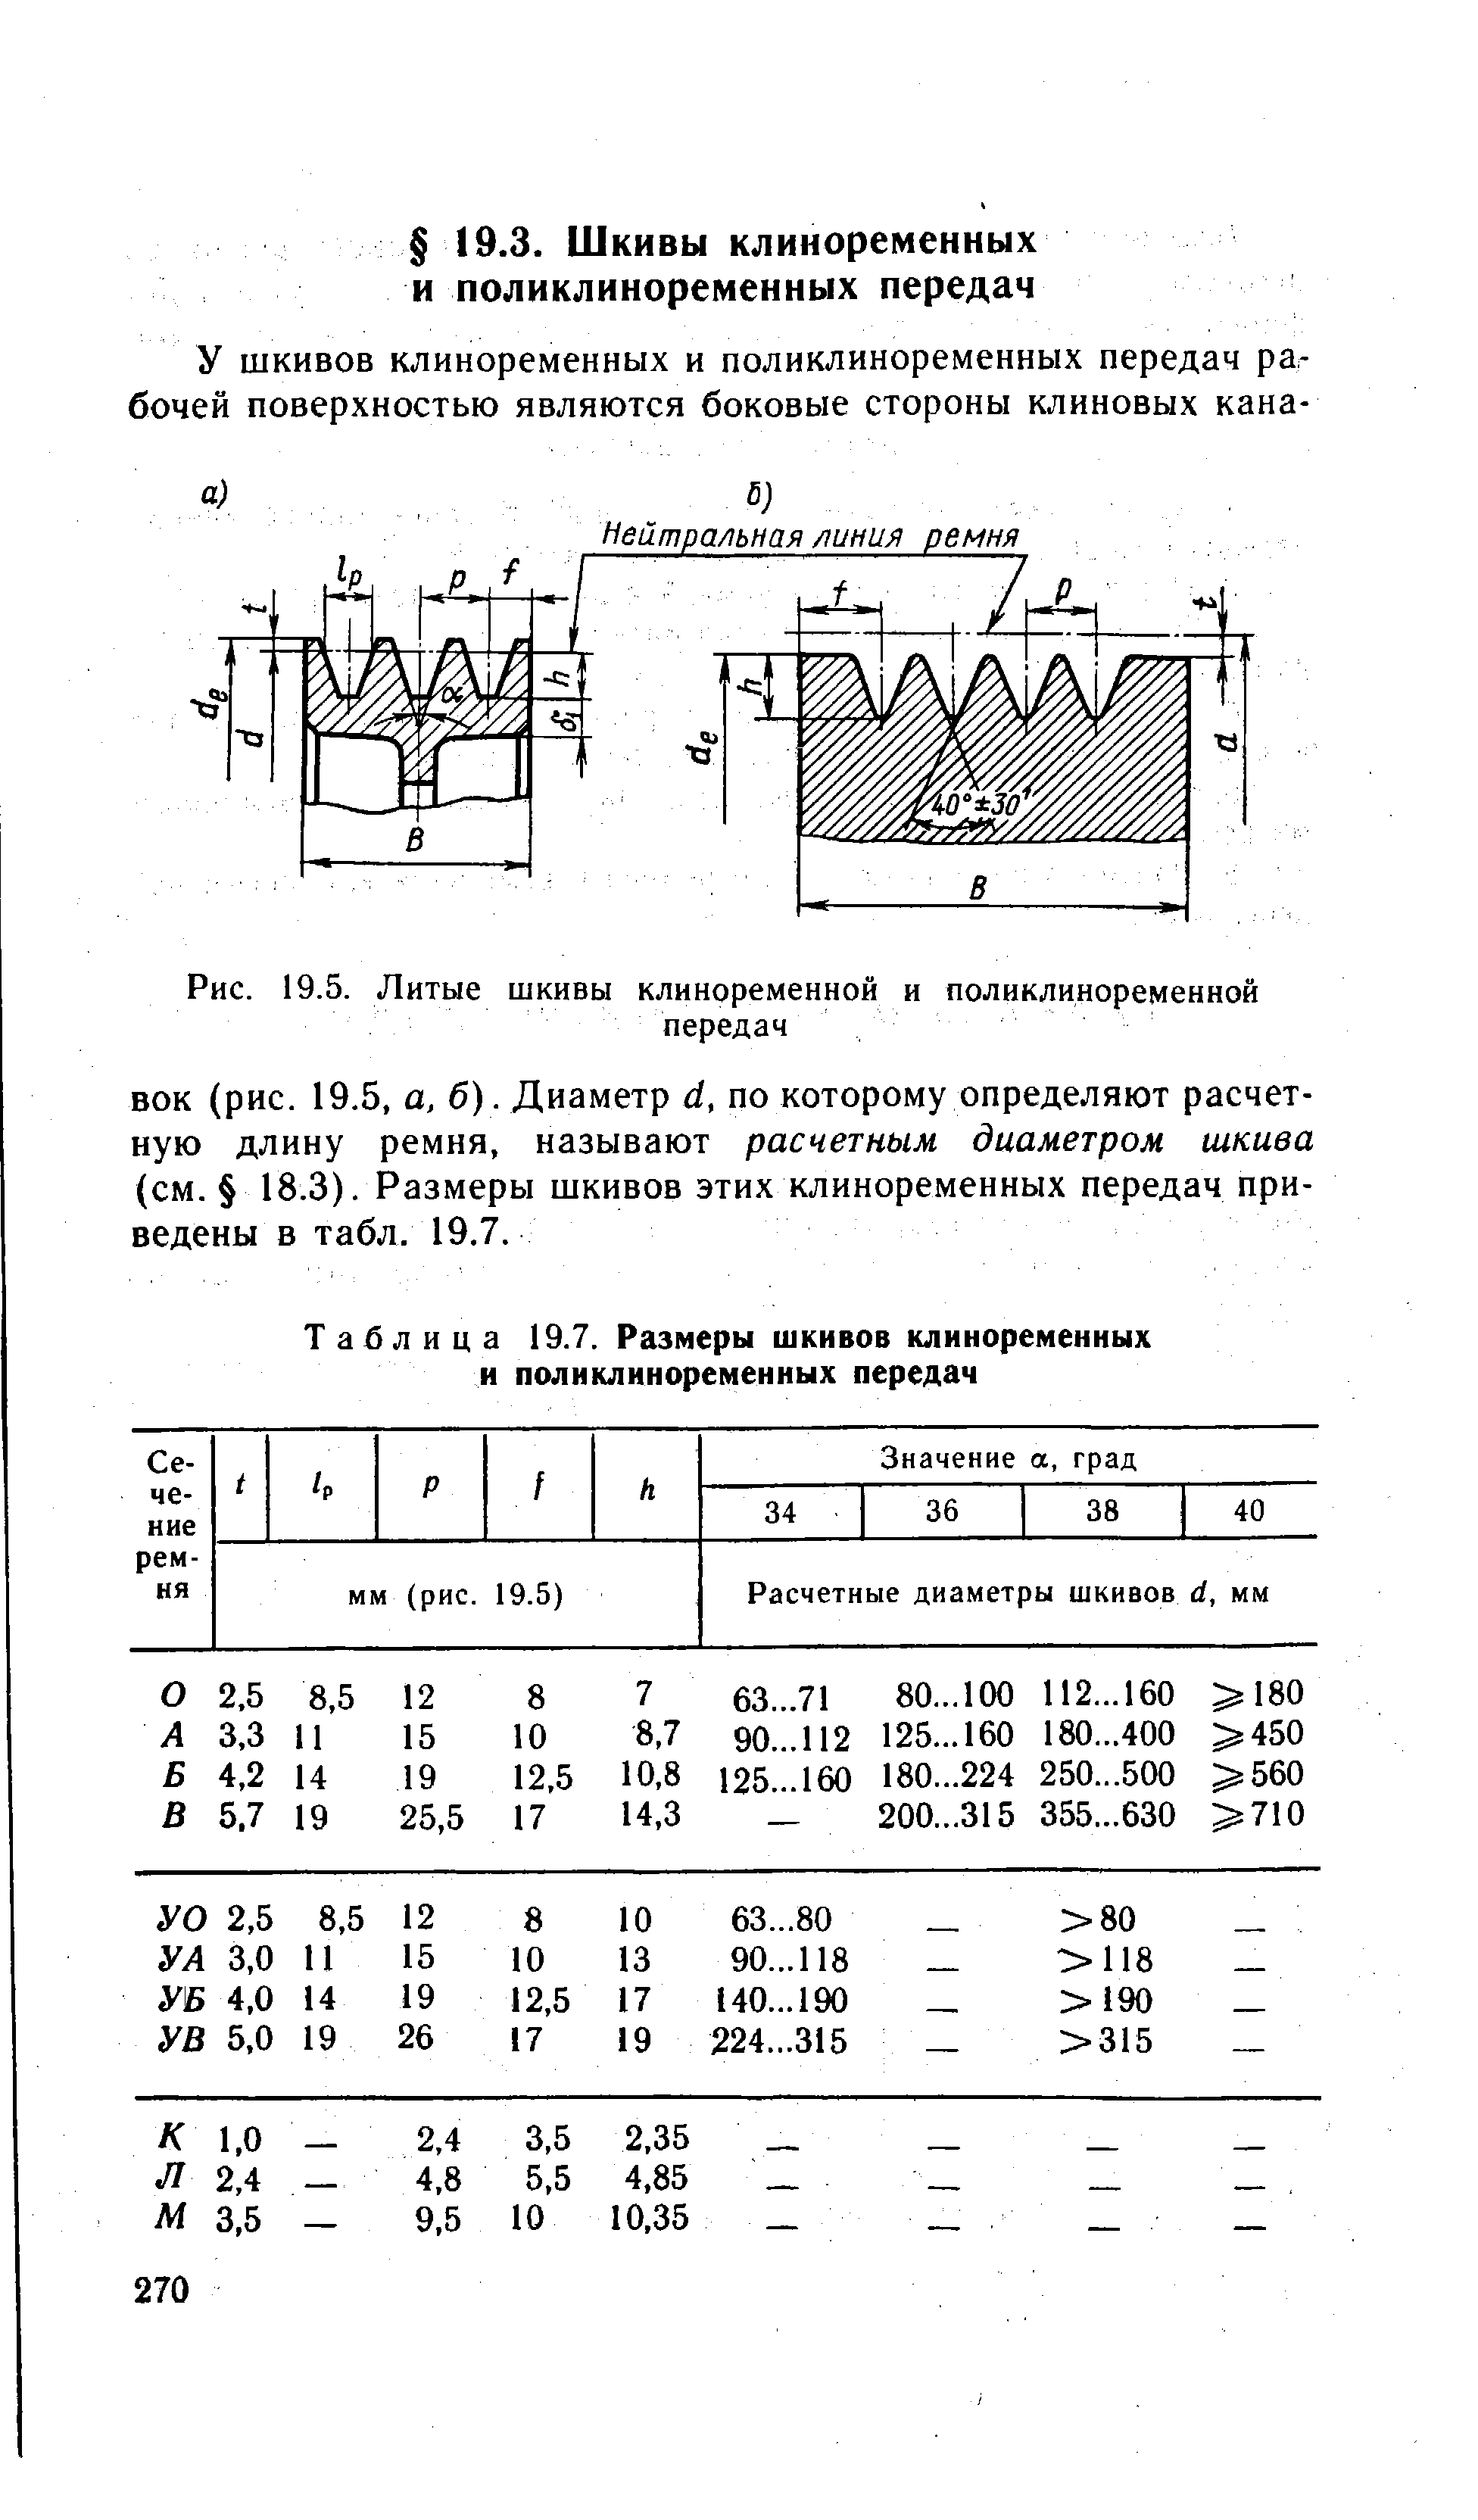 Таблица 19.7. Размеры шкивов клиноременных и поликлиноременных передач
